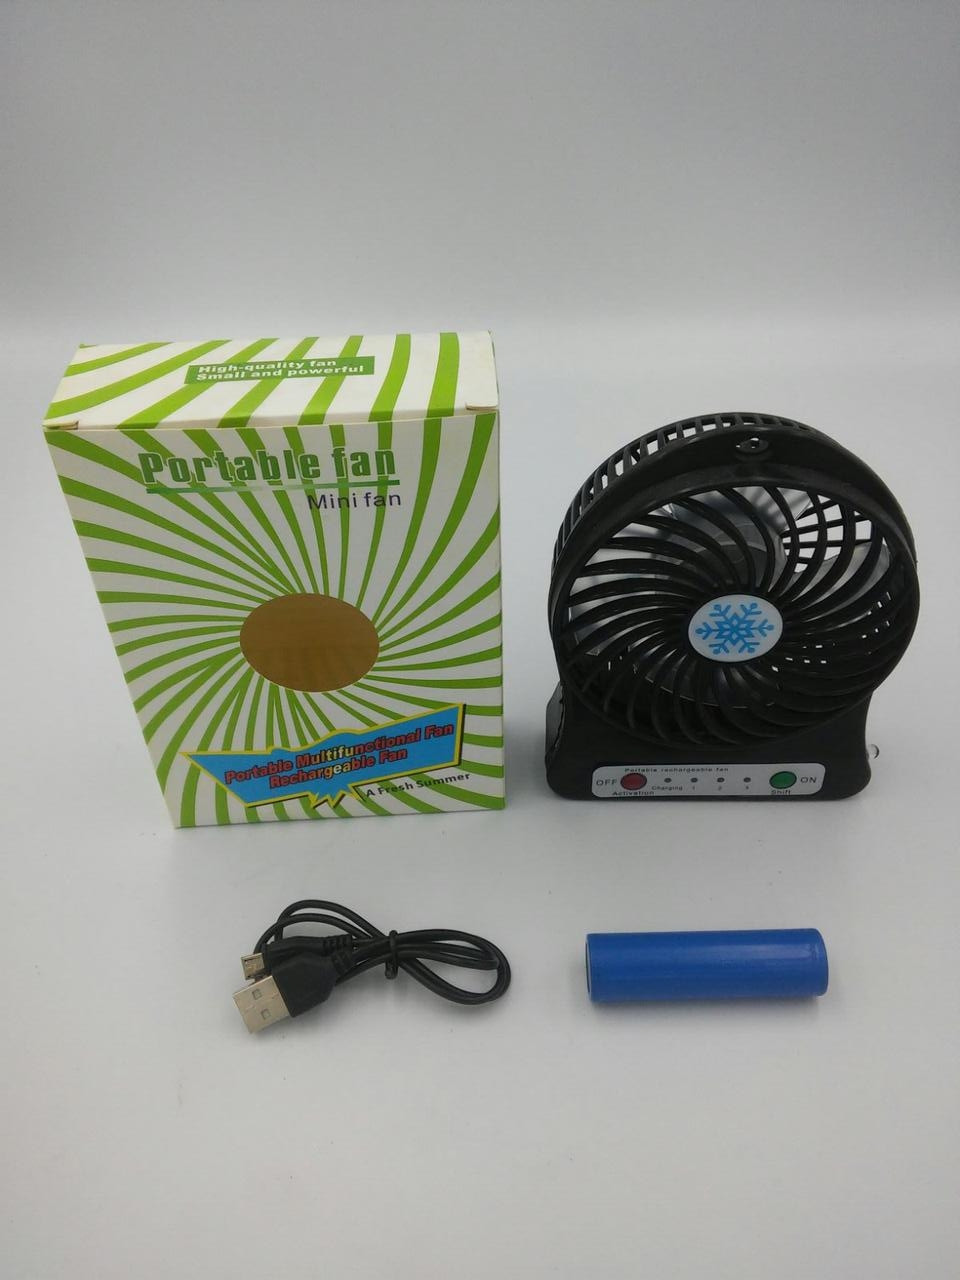 Вентилятор настольный Mini Fan XSFS-01 с аккумулятором 18650 Black: 100  грн. - Вентиляторы Мариуполь на BON.ua 88710300